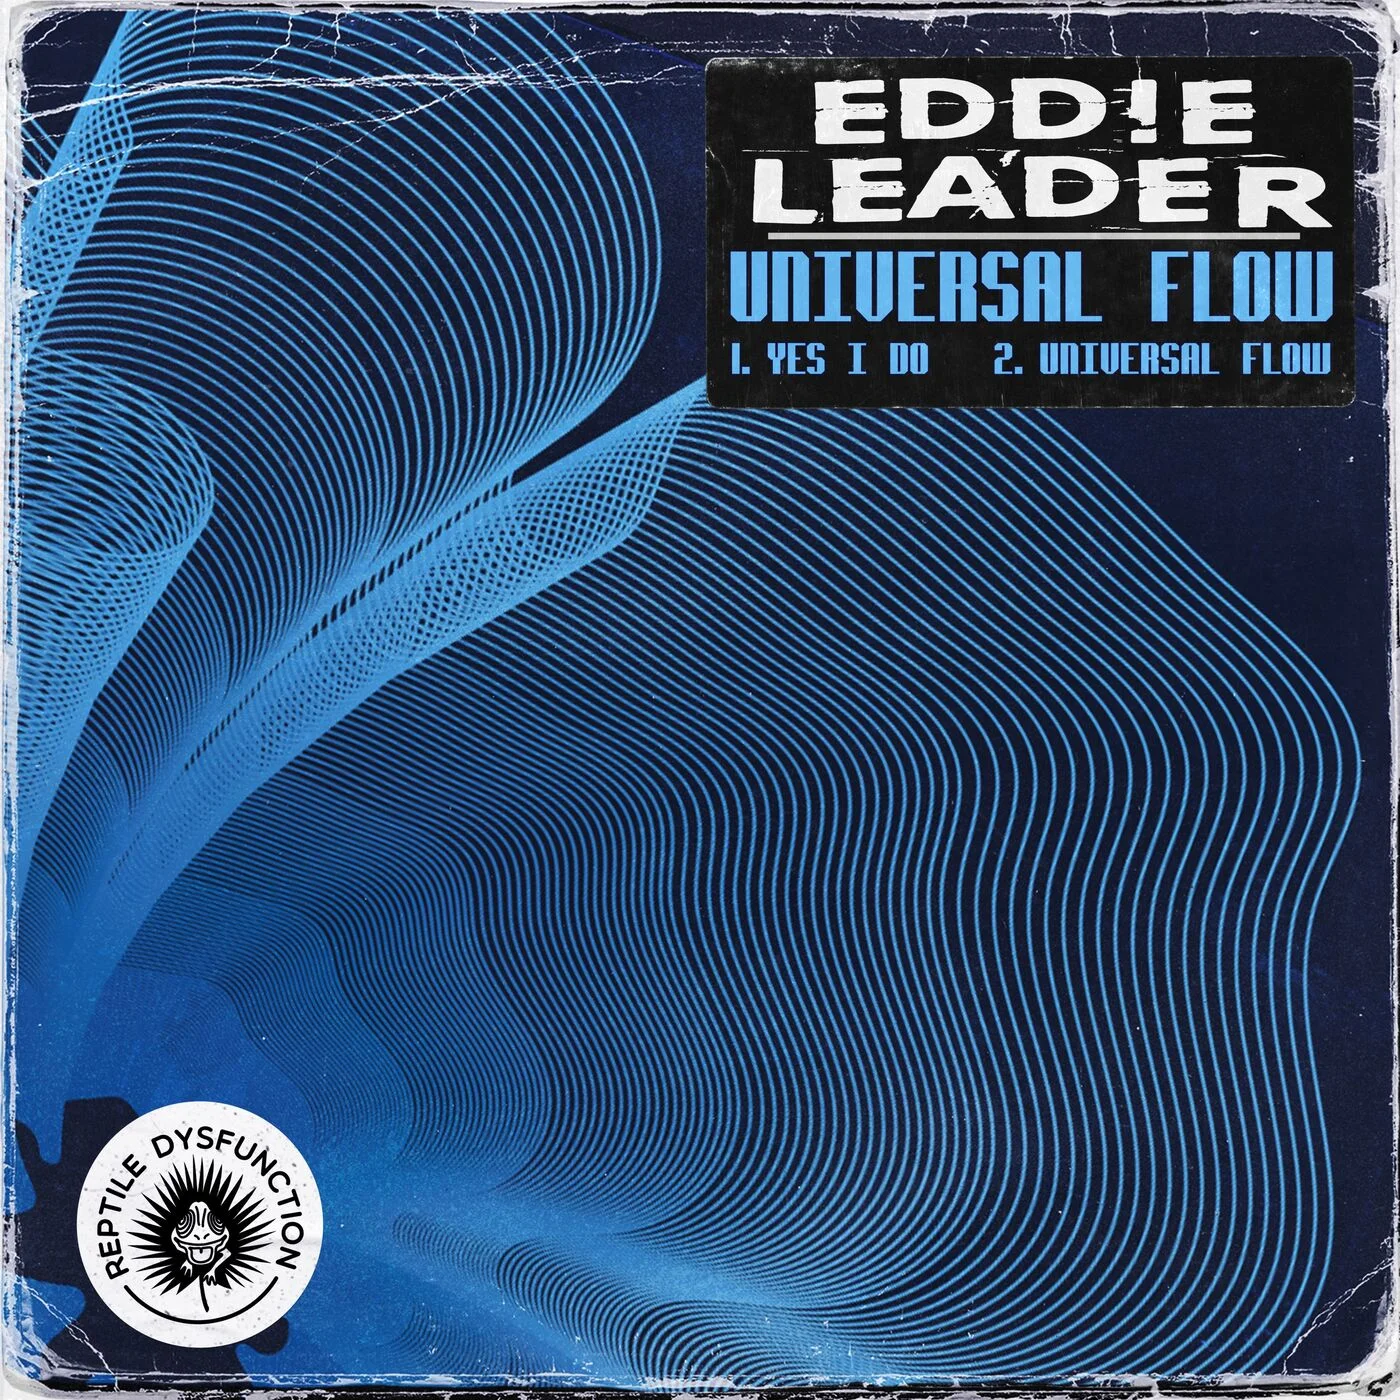 Eddie Leader - Universal Flow (Original Mix)